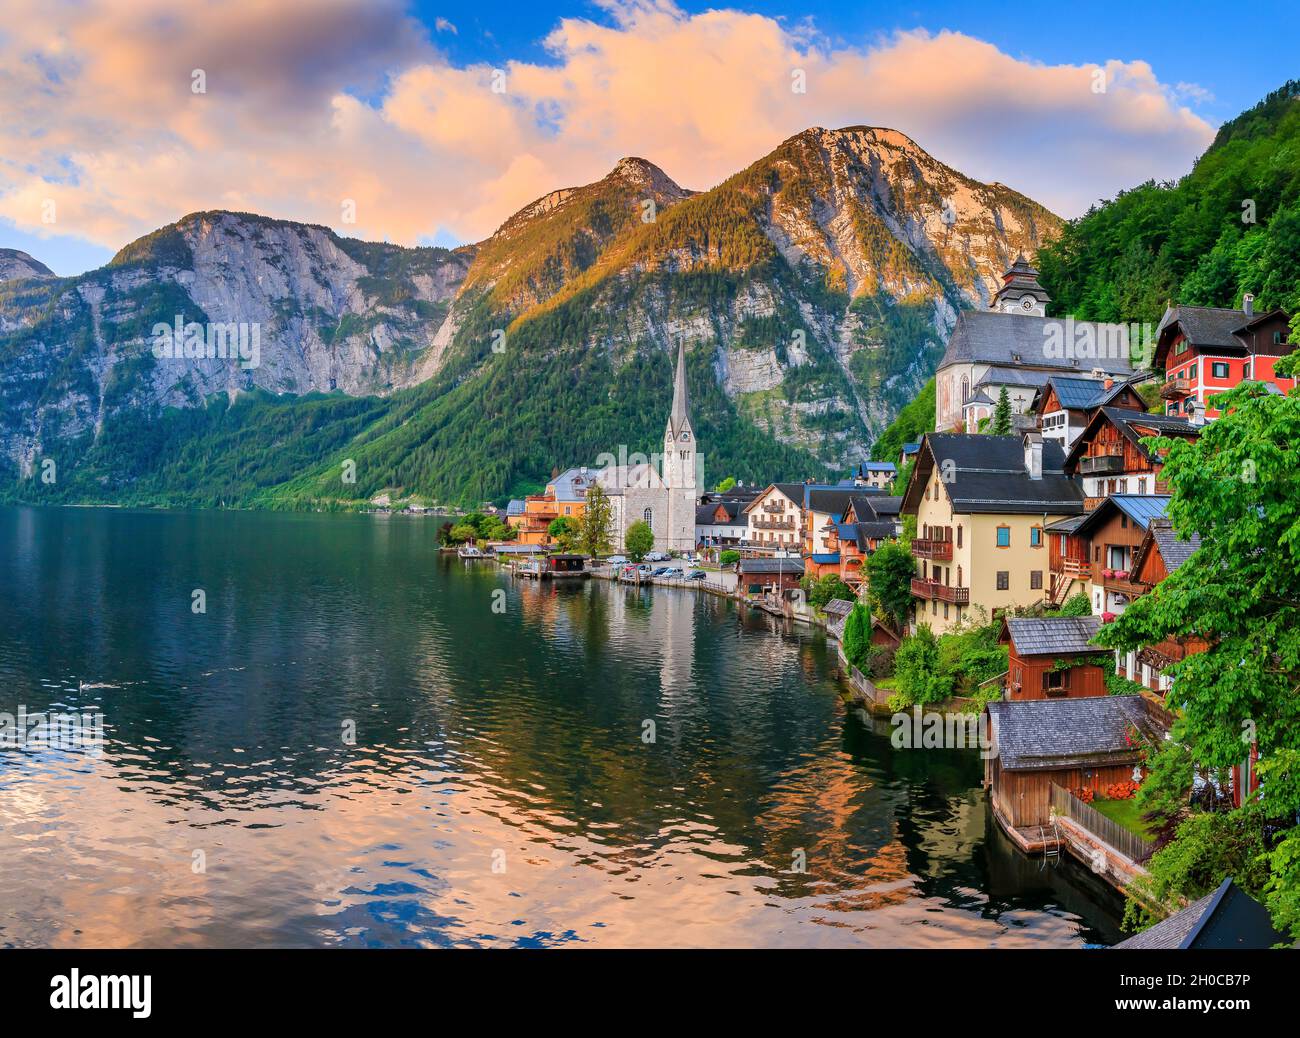 Hallstatt, Austria. Mountain village in the Austrian Alps. Stock Photo